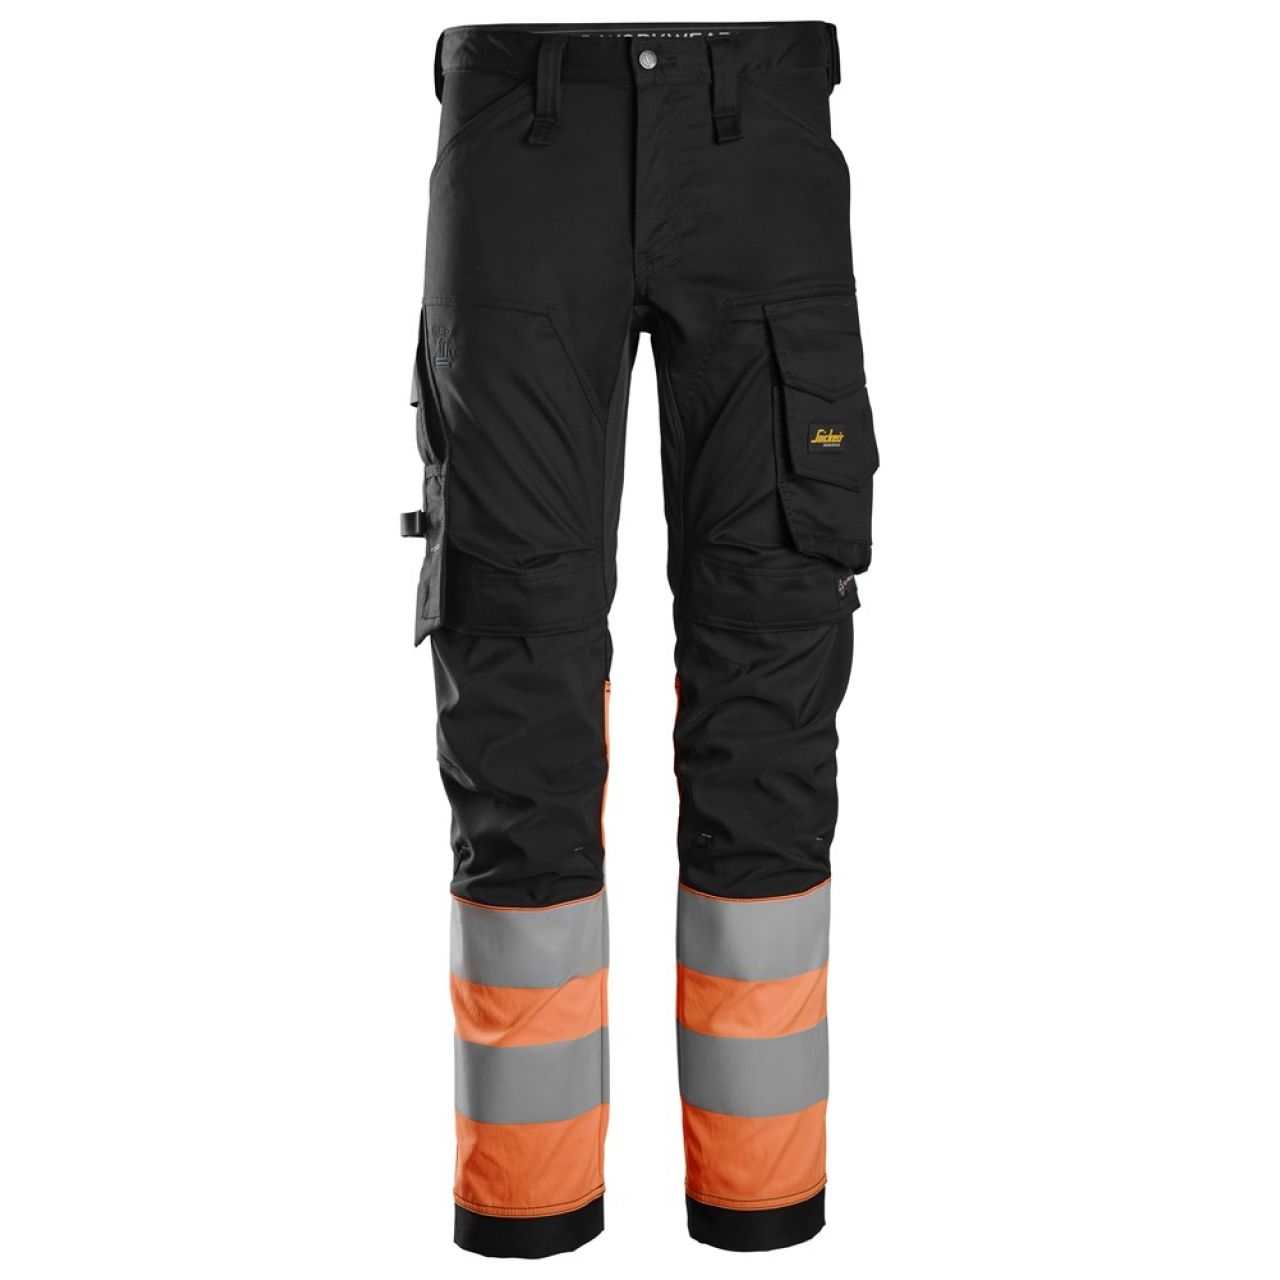 6334 Pantalones largos de trabajo elásticos de alta visibilidad clase 1 negro-naranja talla 92